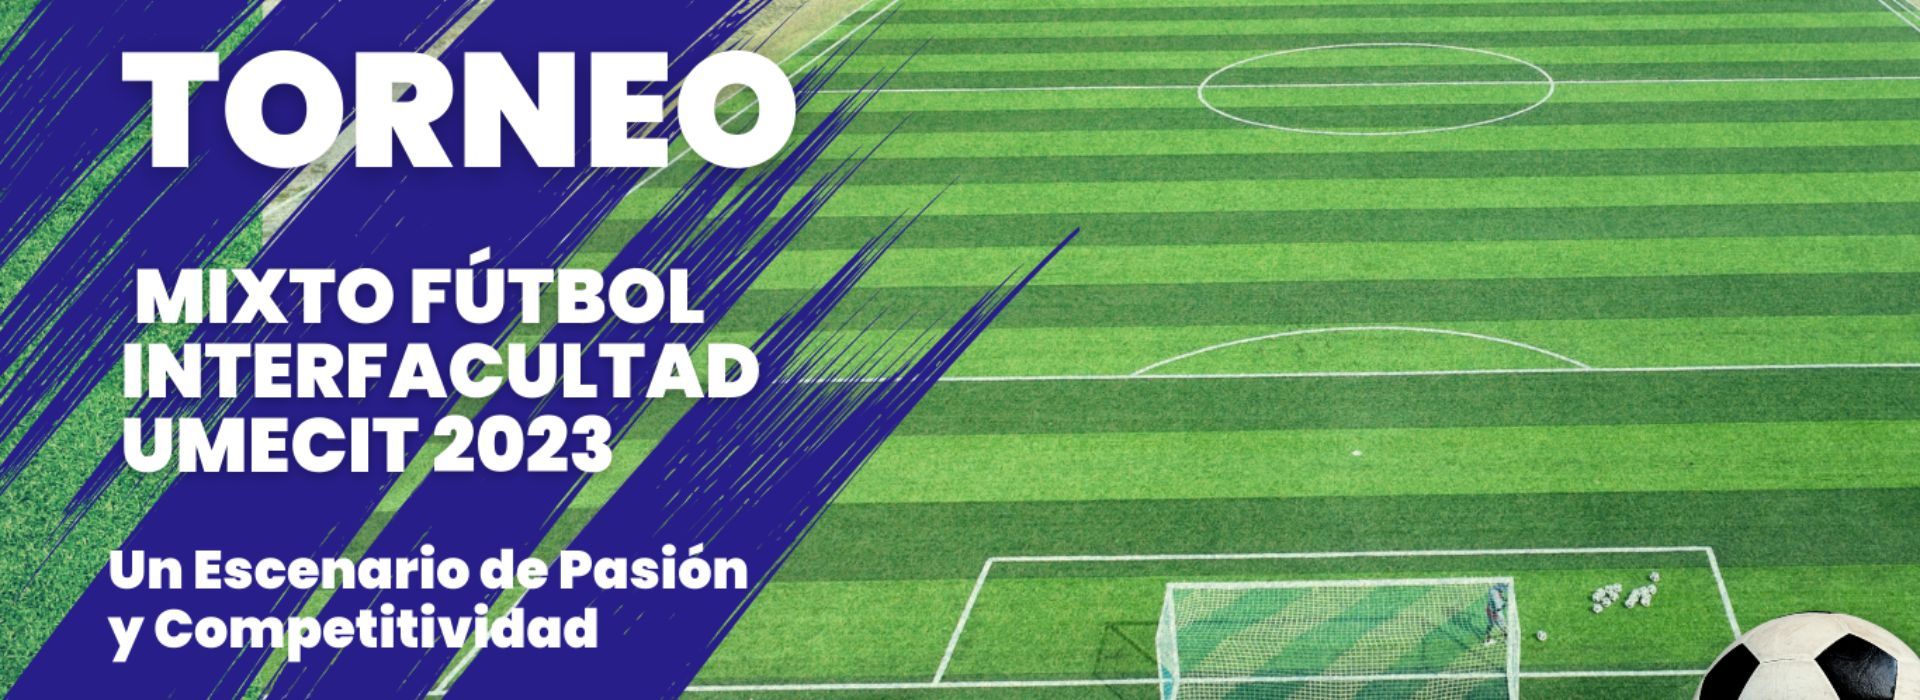 Torneo Mixto Fútbol Interfacultad UMECIT 2023: Un Escenario de Pasión y Competitividad